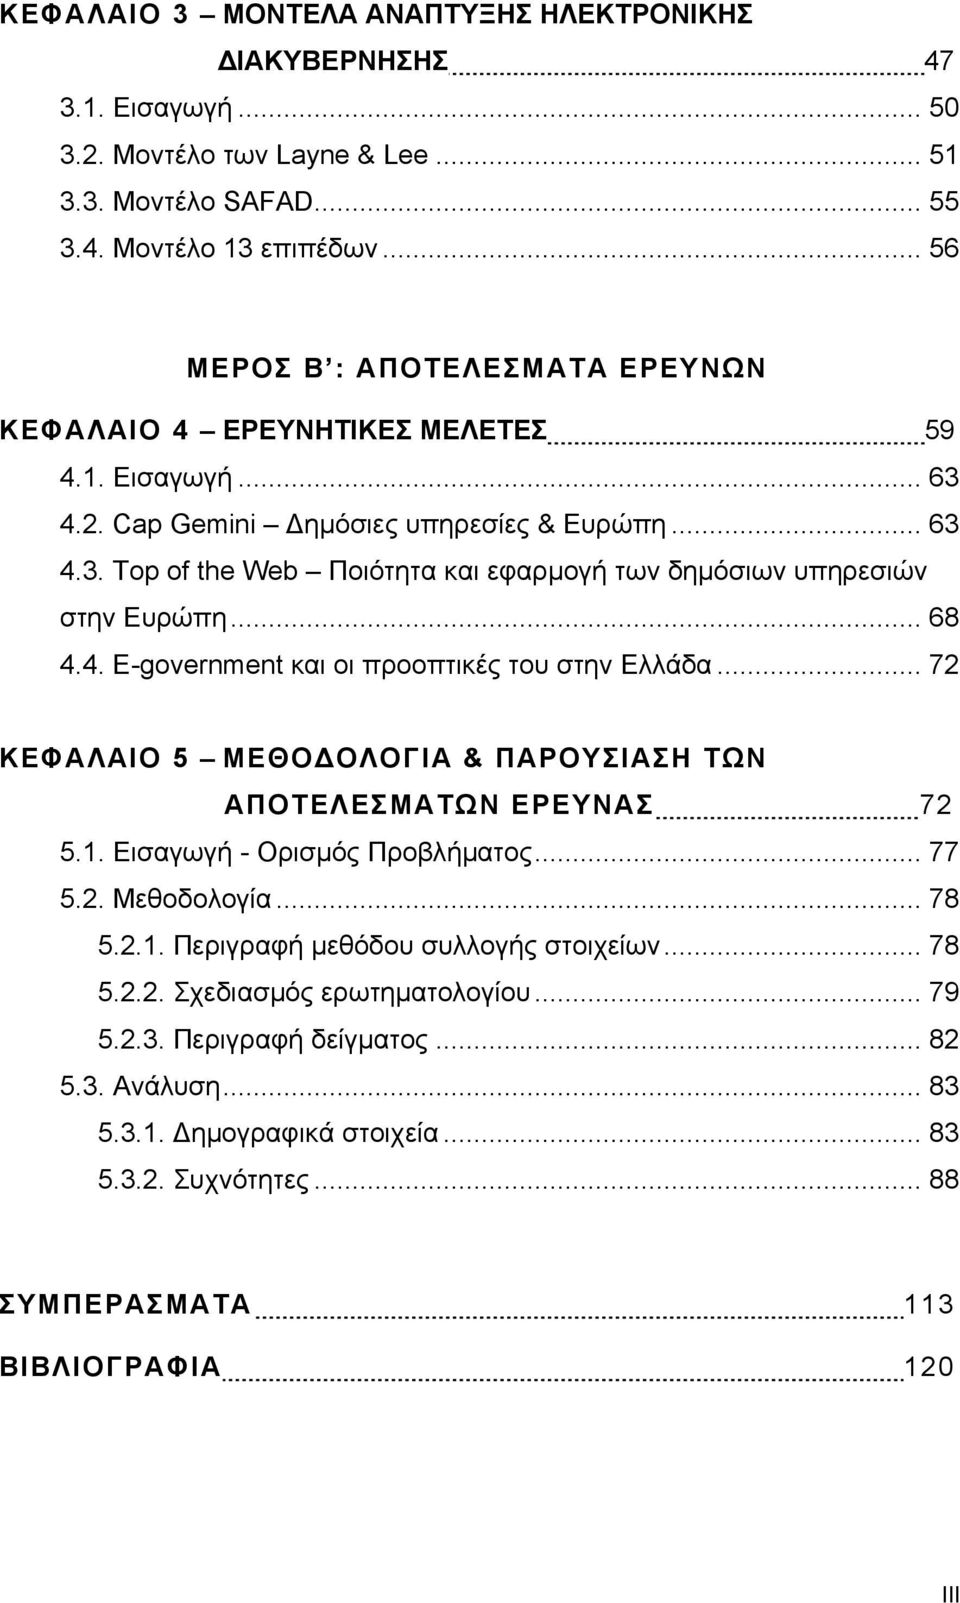 .. 68 4.4. E-government και οι προοπτικές του στην Ελλάδα... 72 ΚΕΦΑΛΑΙΟ 5 ΜΕΘΟ ΟΛΟΓΙΑ & ΠΑΡΟΥΣΙΑΣΗ ΤΩΝ ΑΠΟΤΕΛΕΣΜΑΤΩΝ ΕΡΕΥΝΑΣ 72 5.1. Εισαγωγή - Ορισµός Προβλήµατος... 77 5.2. Μεθοδολογία... 78 5.2.1. Περιγραφή µεθόδου συλλογής στοιχείων.